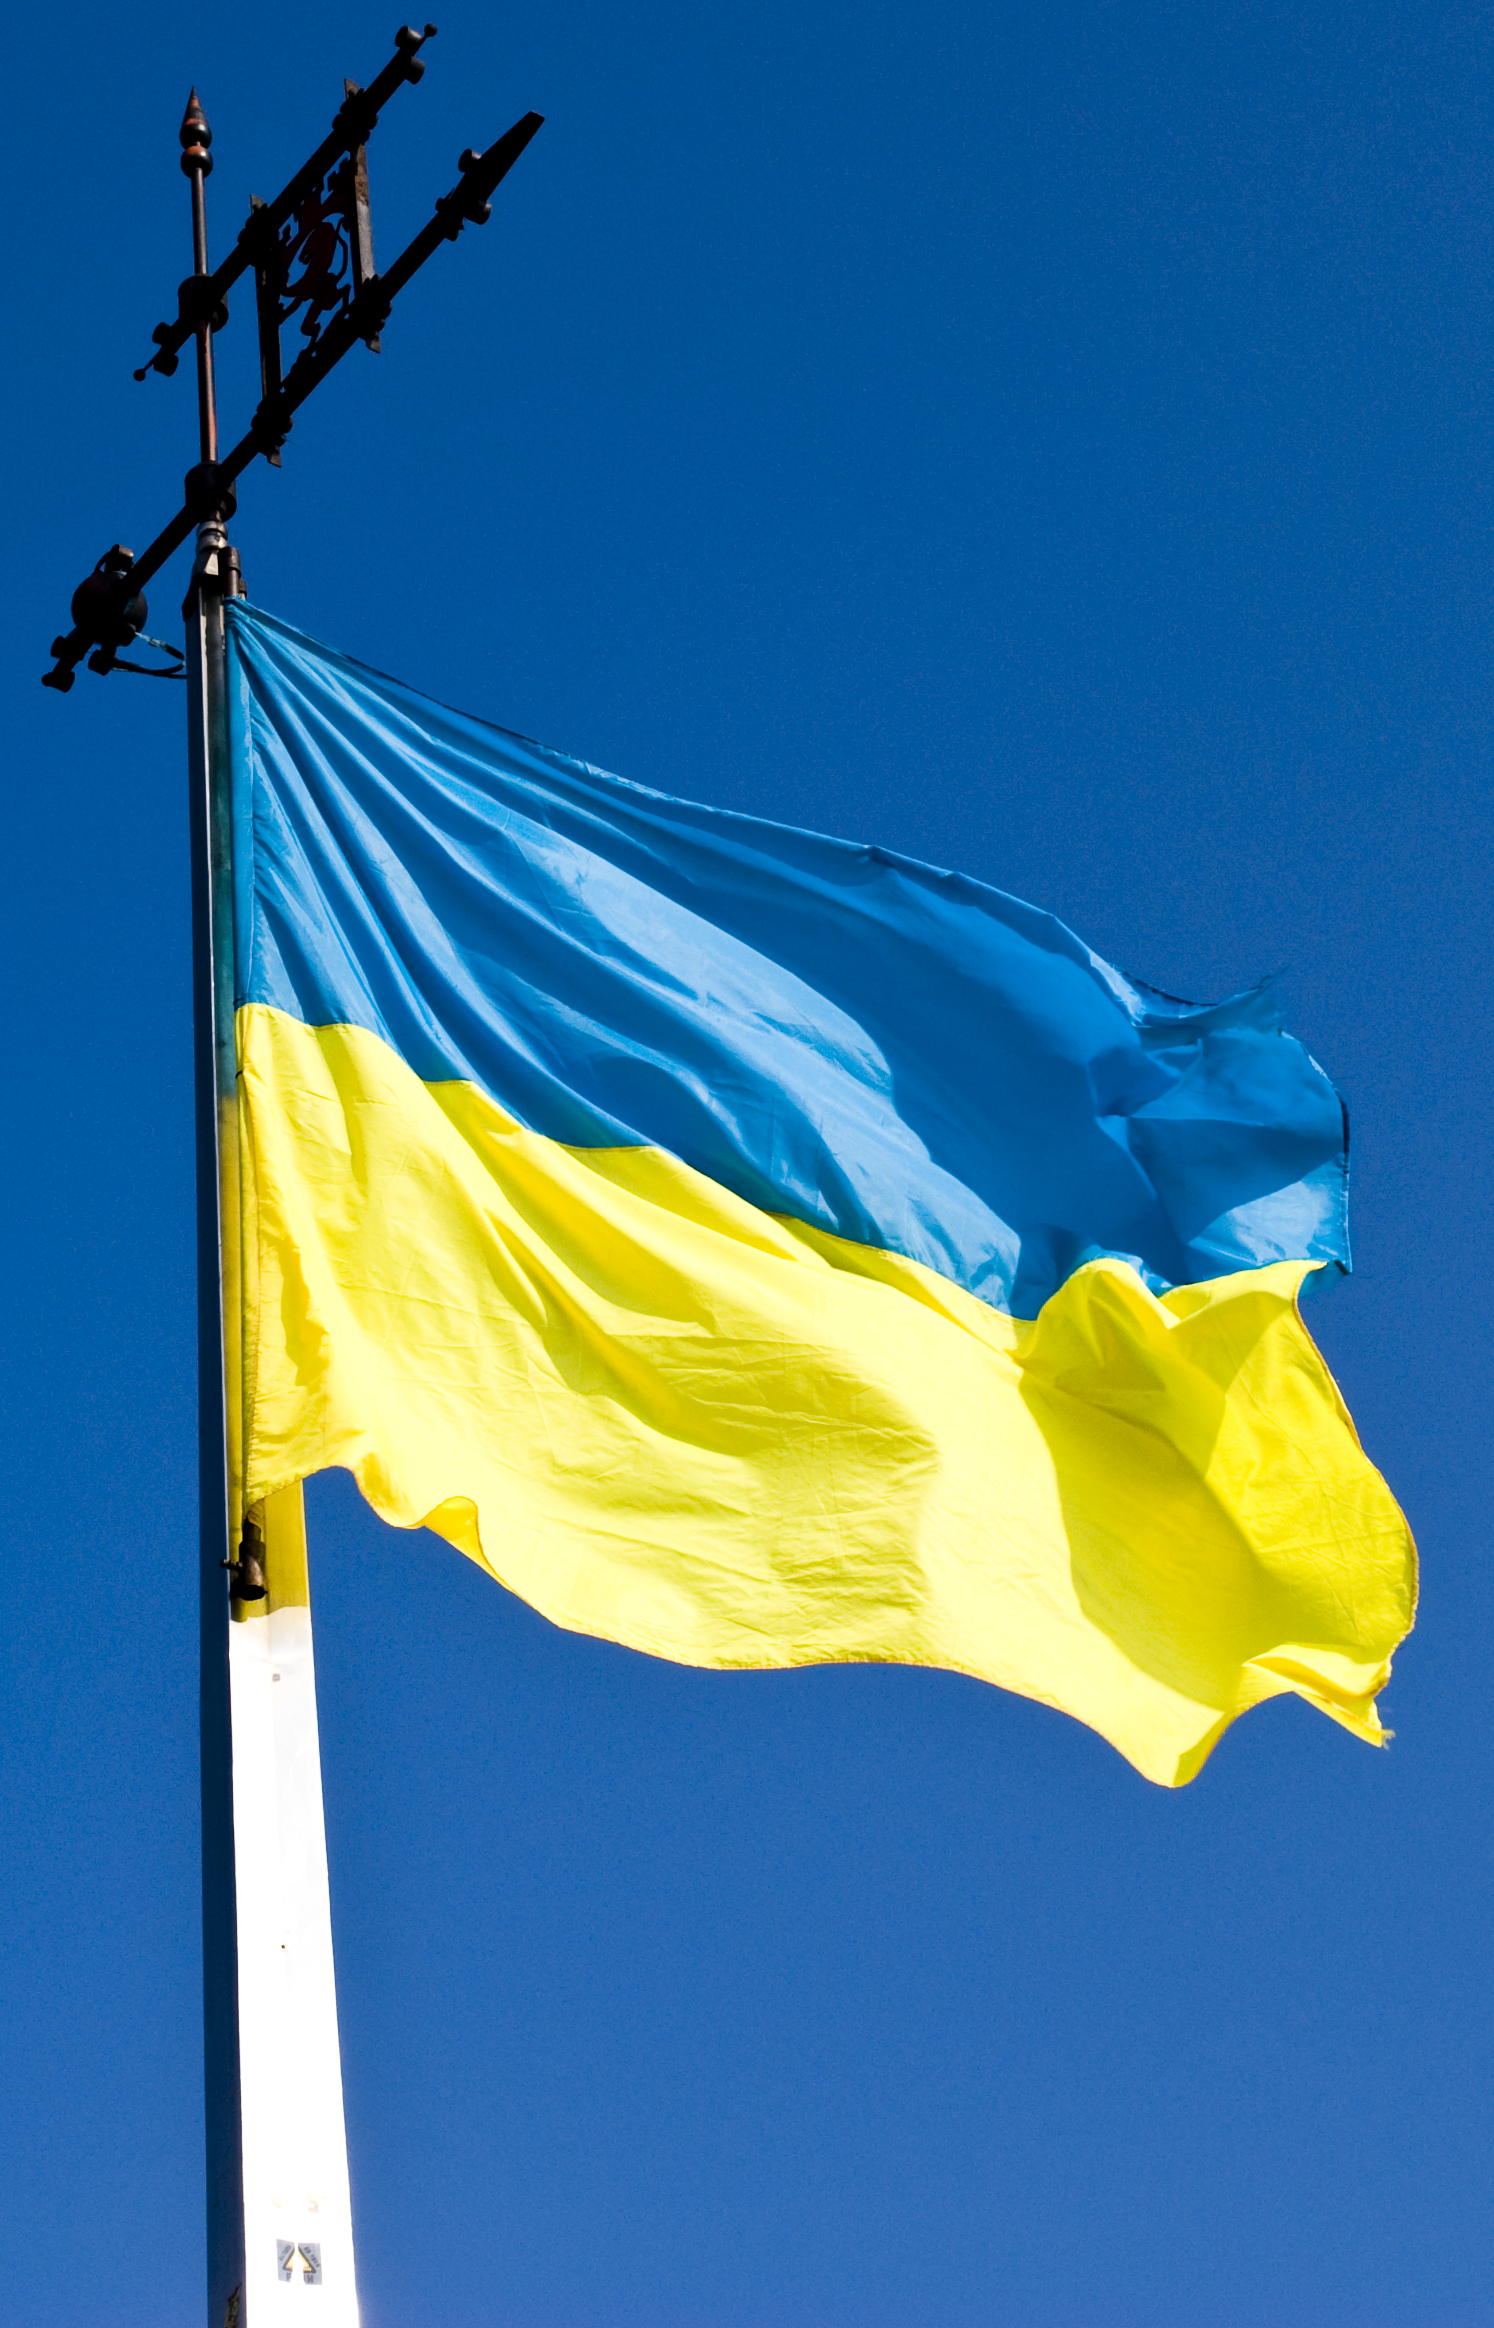 UkraineFlag (c) Von Theriddlen - Eigenes Werk, CC BY-SA 4.0, https://commons.wikimedia.org/w/index.php?curid=14850332